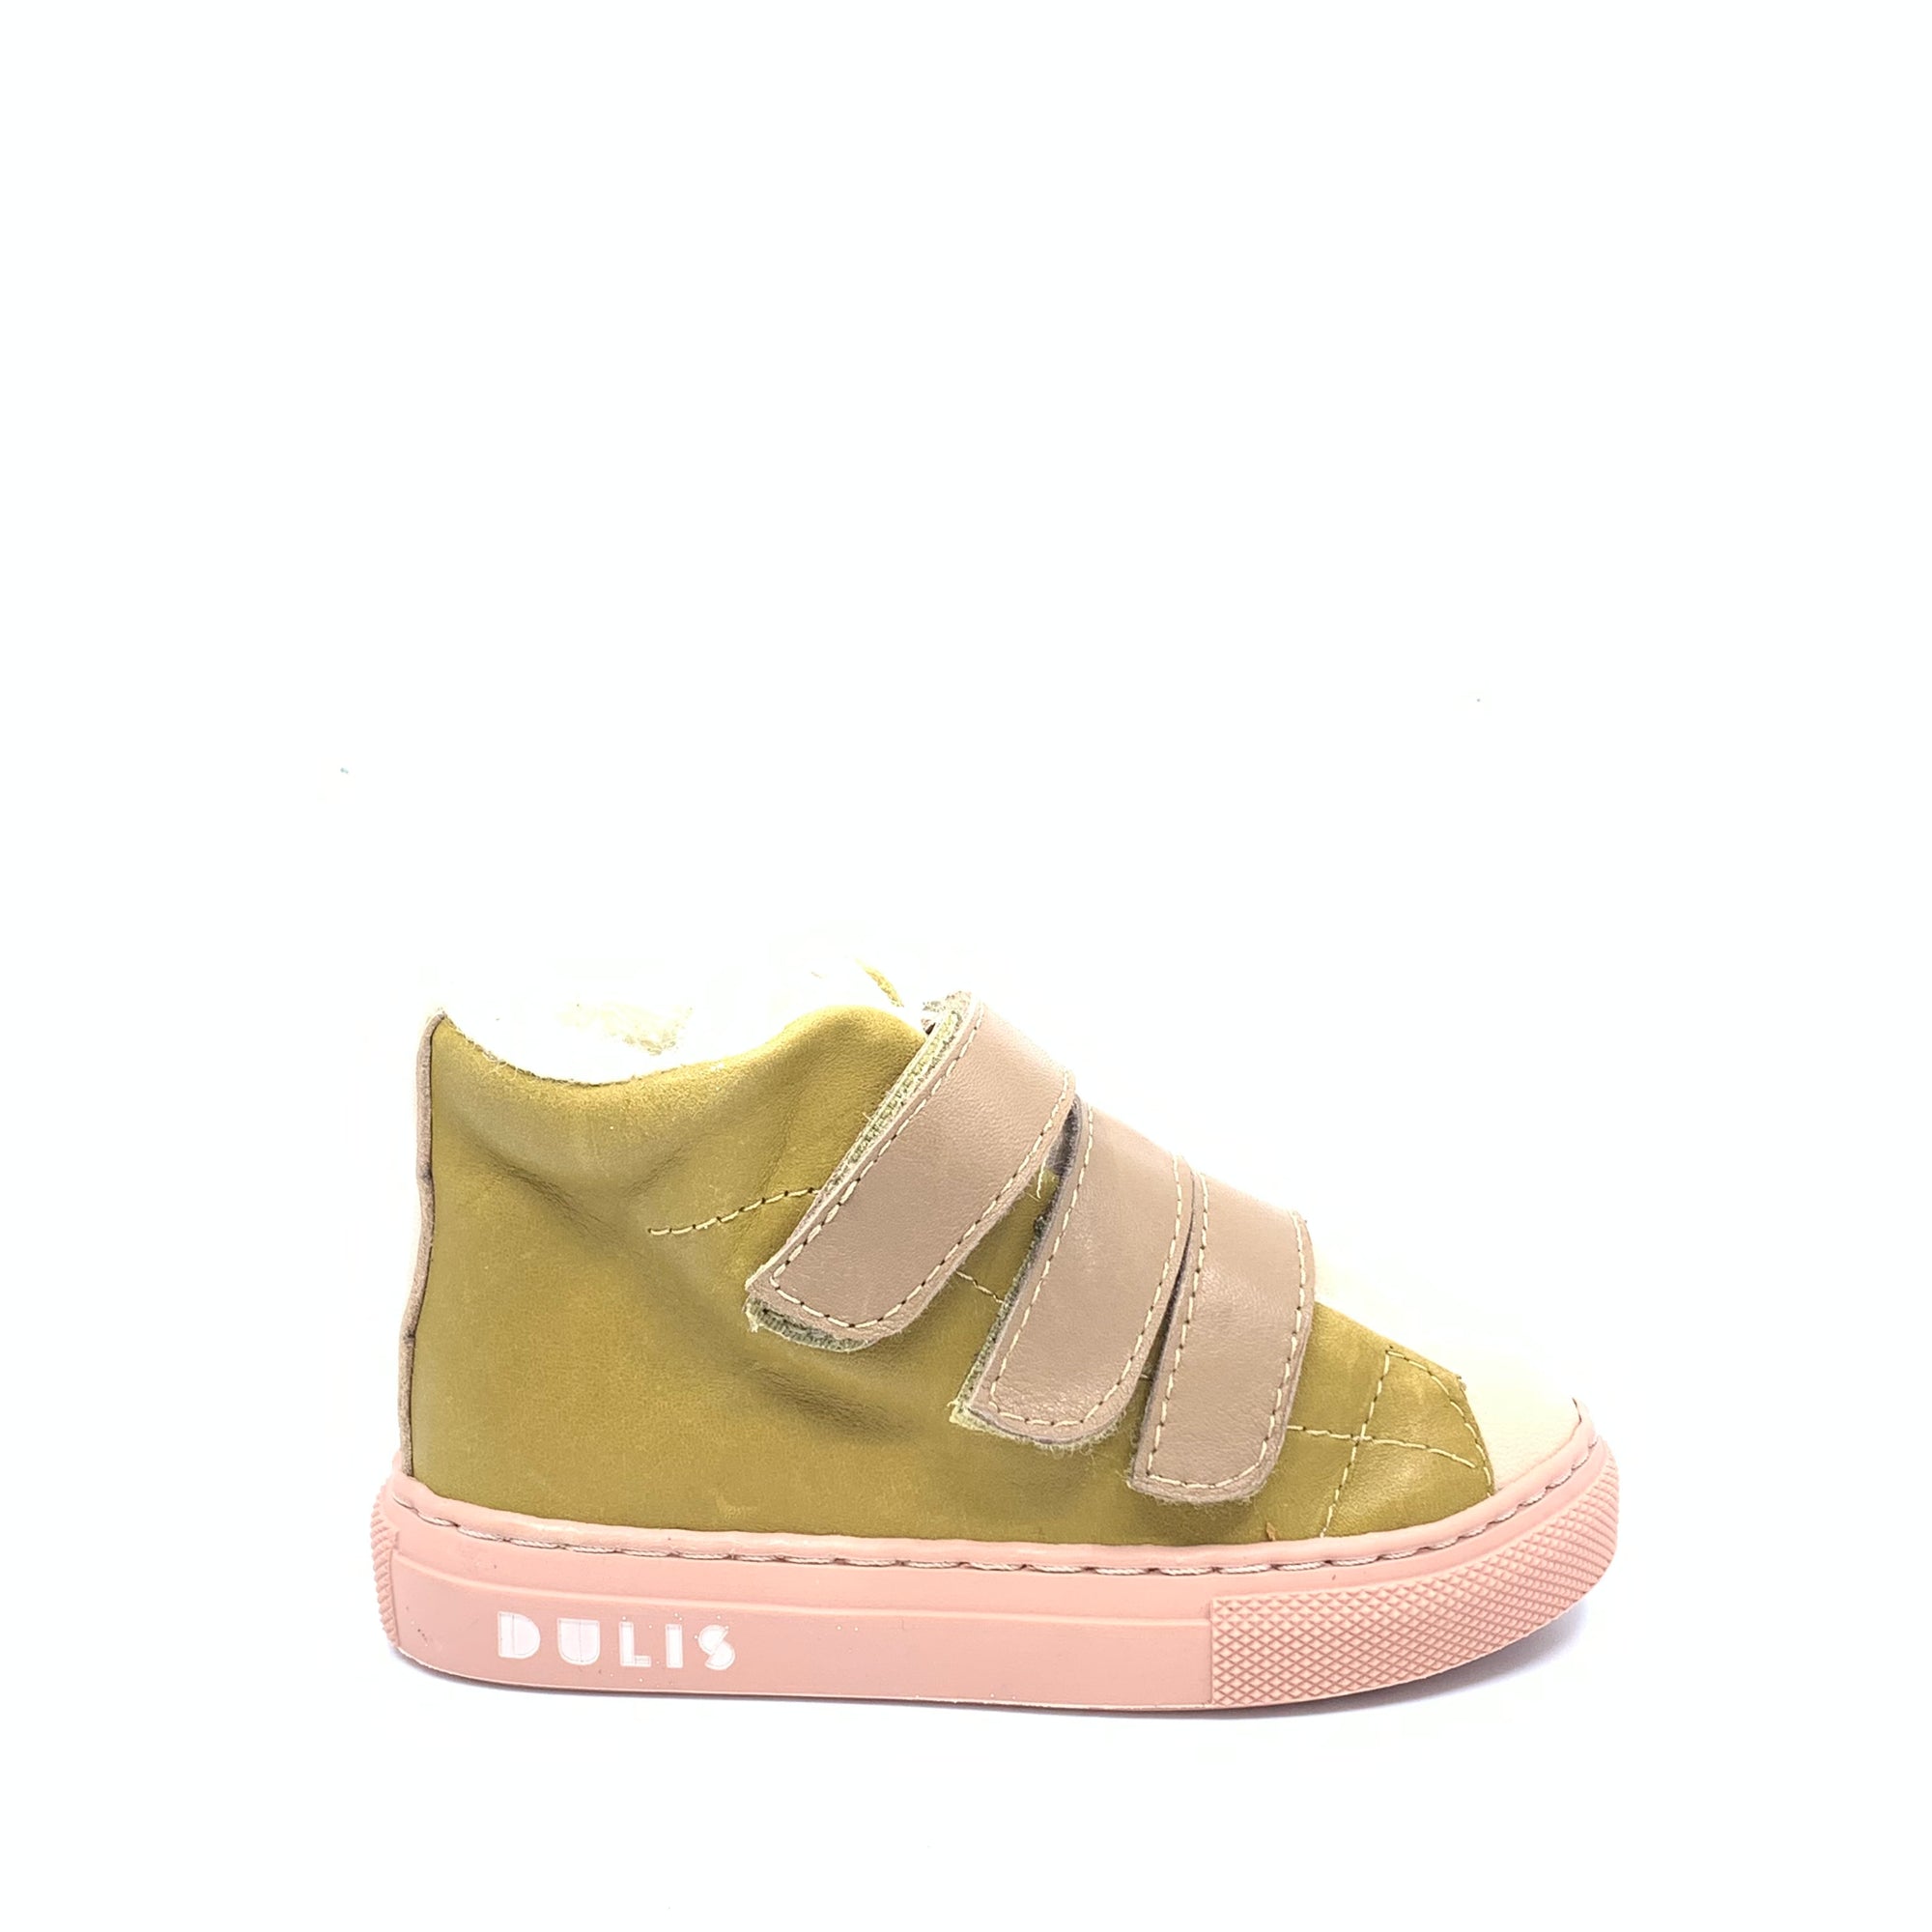 Dulis Olive Leather Hi Top Sneaker-Tassel Children Shoes